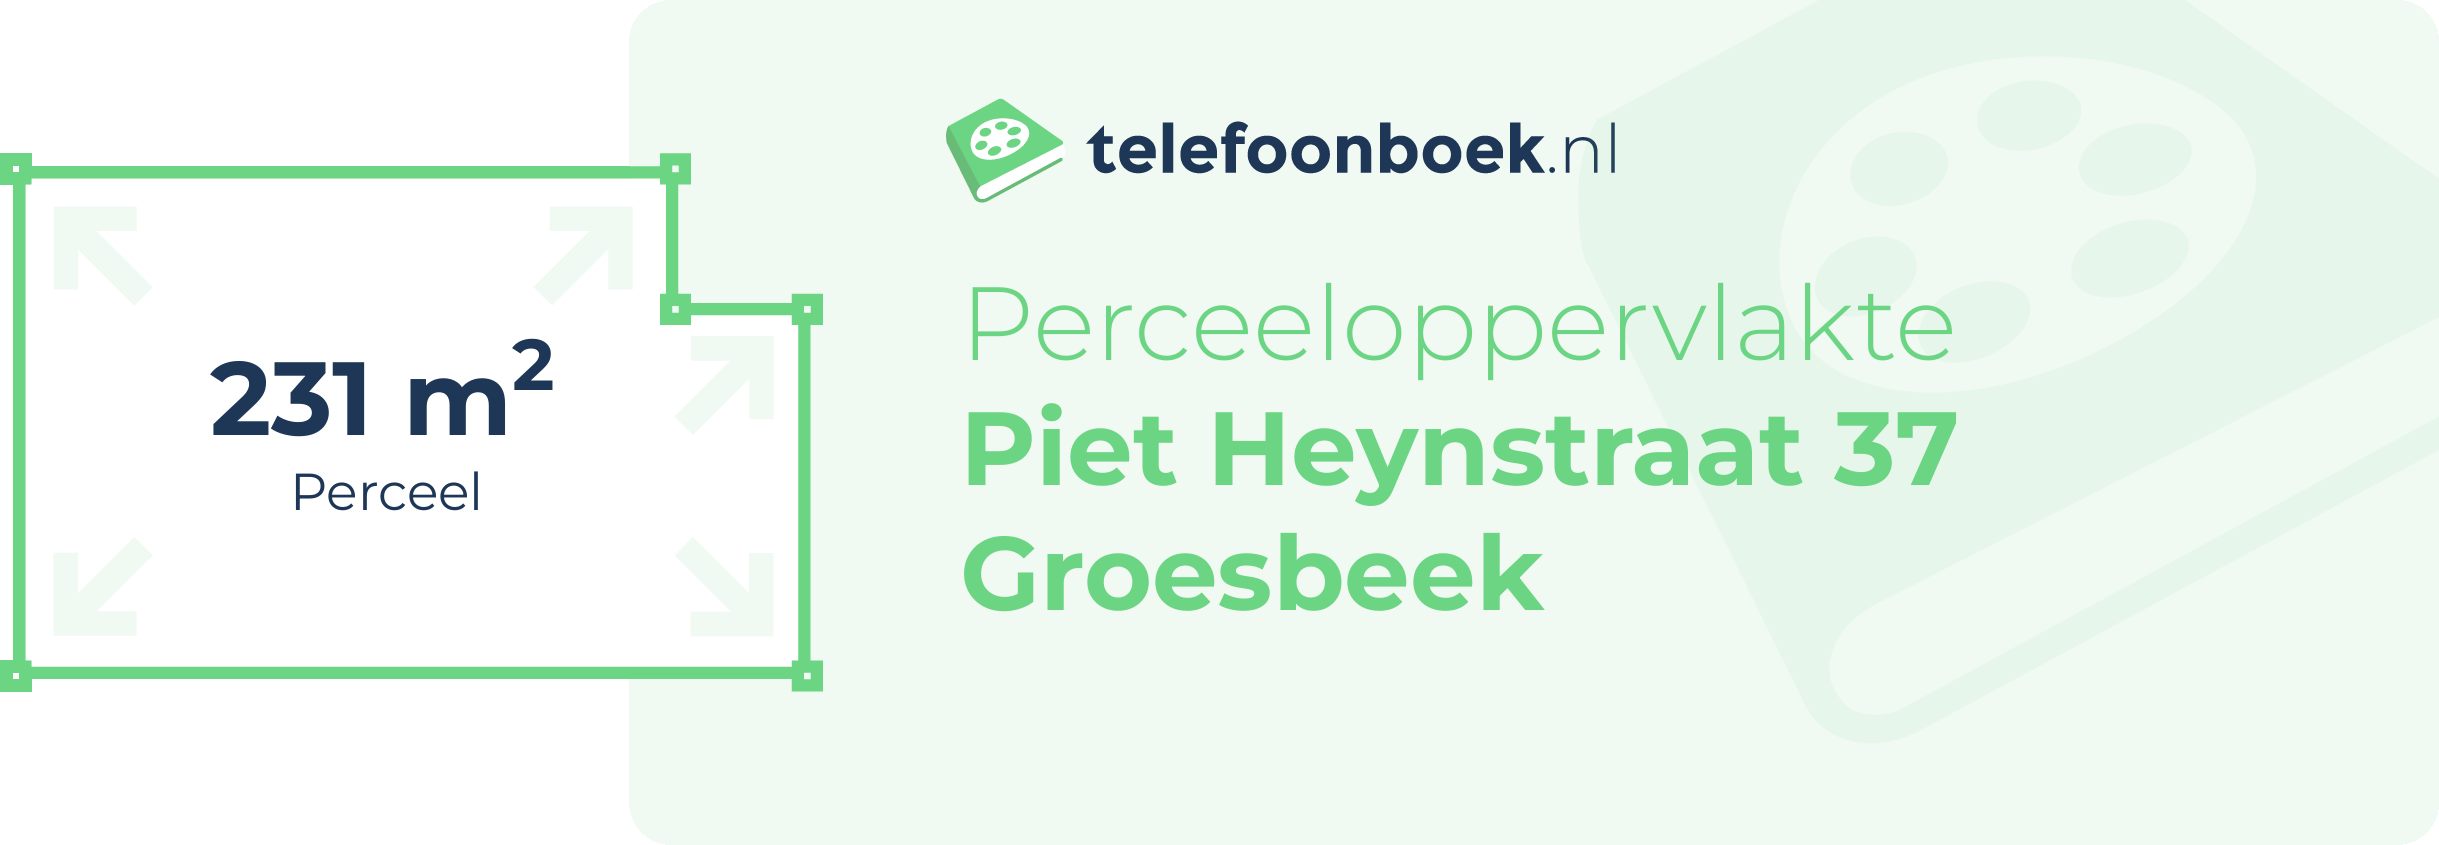 Perceeloppervlakte Piet Heynstraat 37 Groesbeek